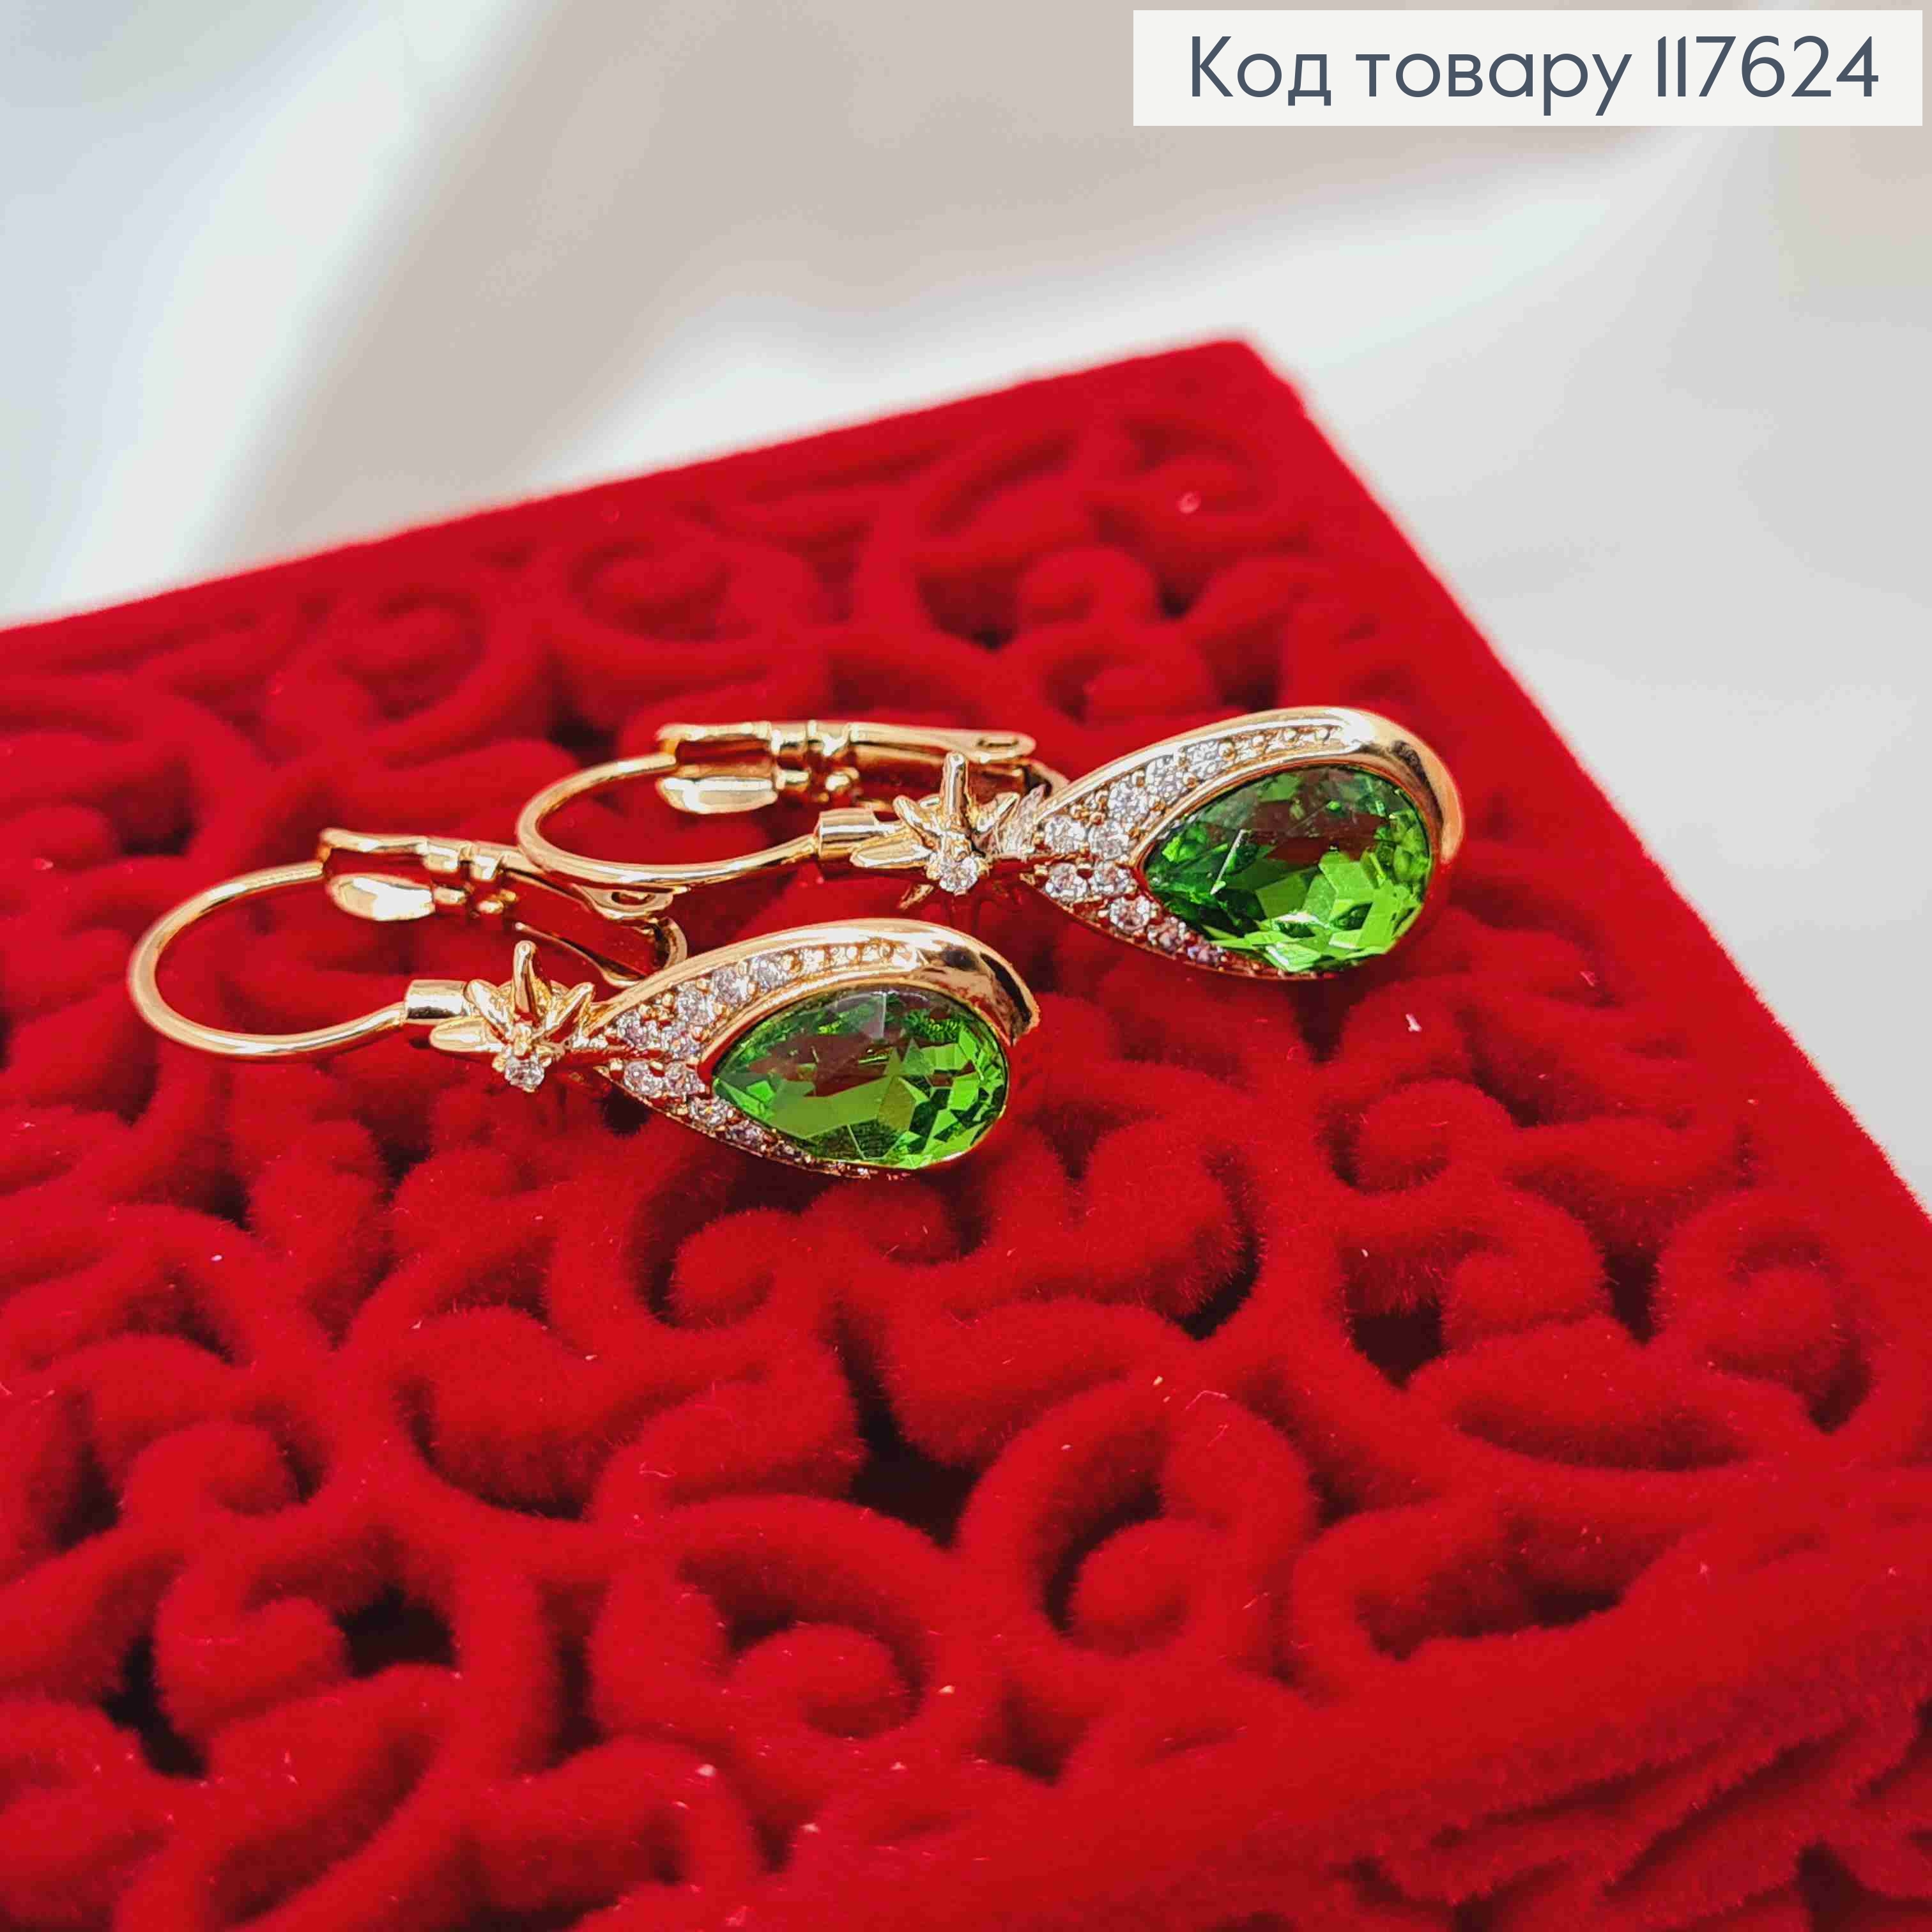 Сережки з Блискучим Зеленим камінцем, 2,7см, франц. застібка, Xuping 18К 117624 фото 2